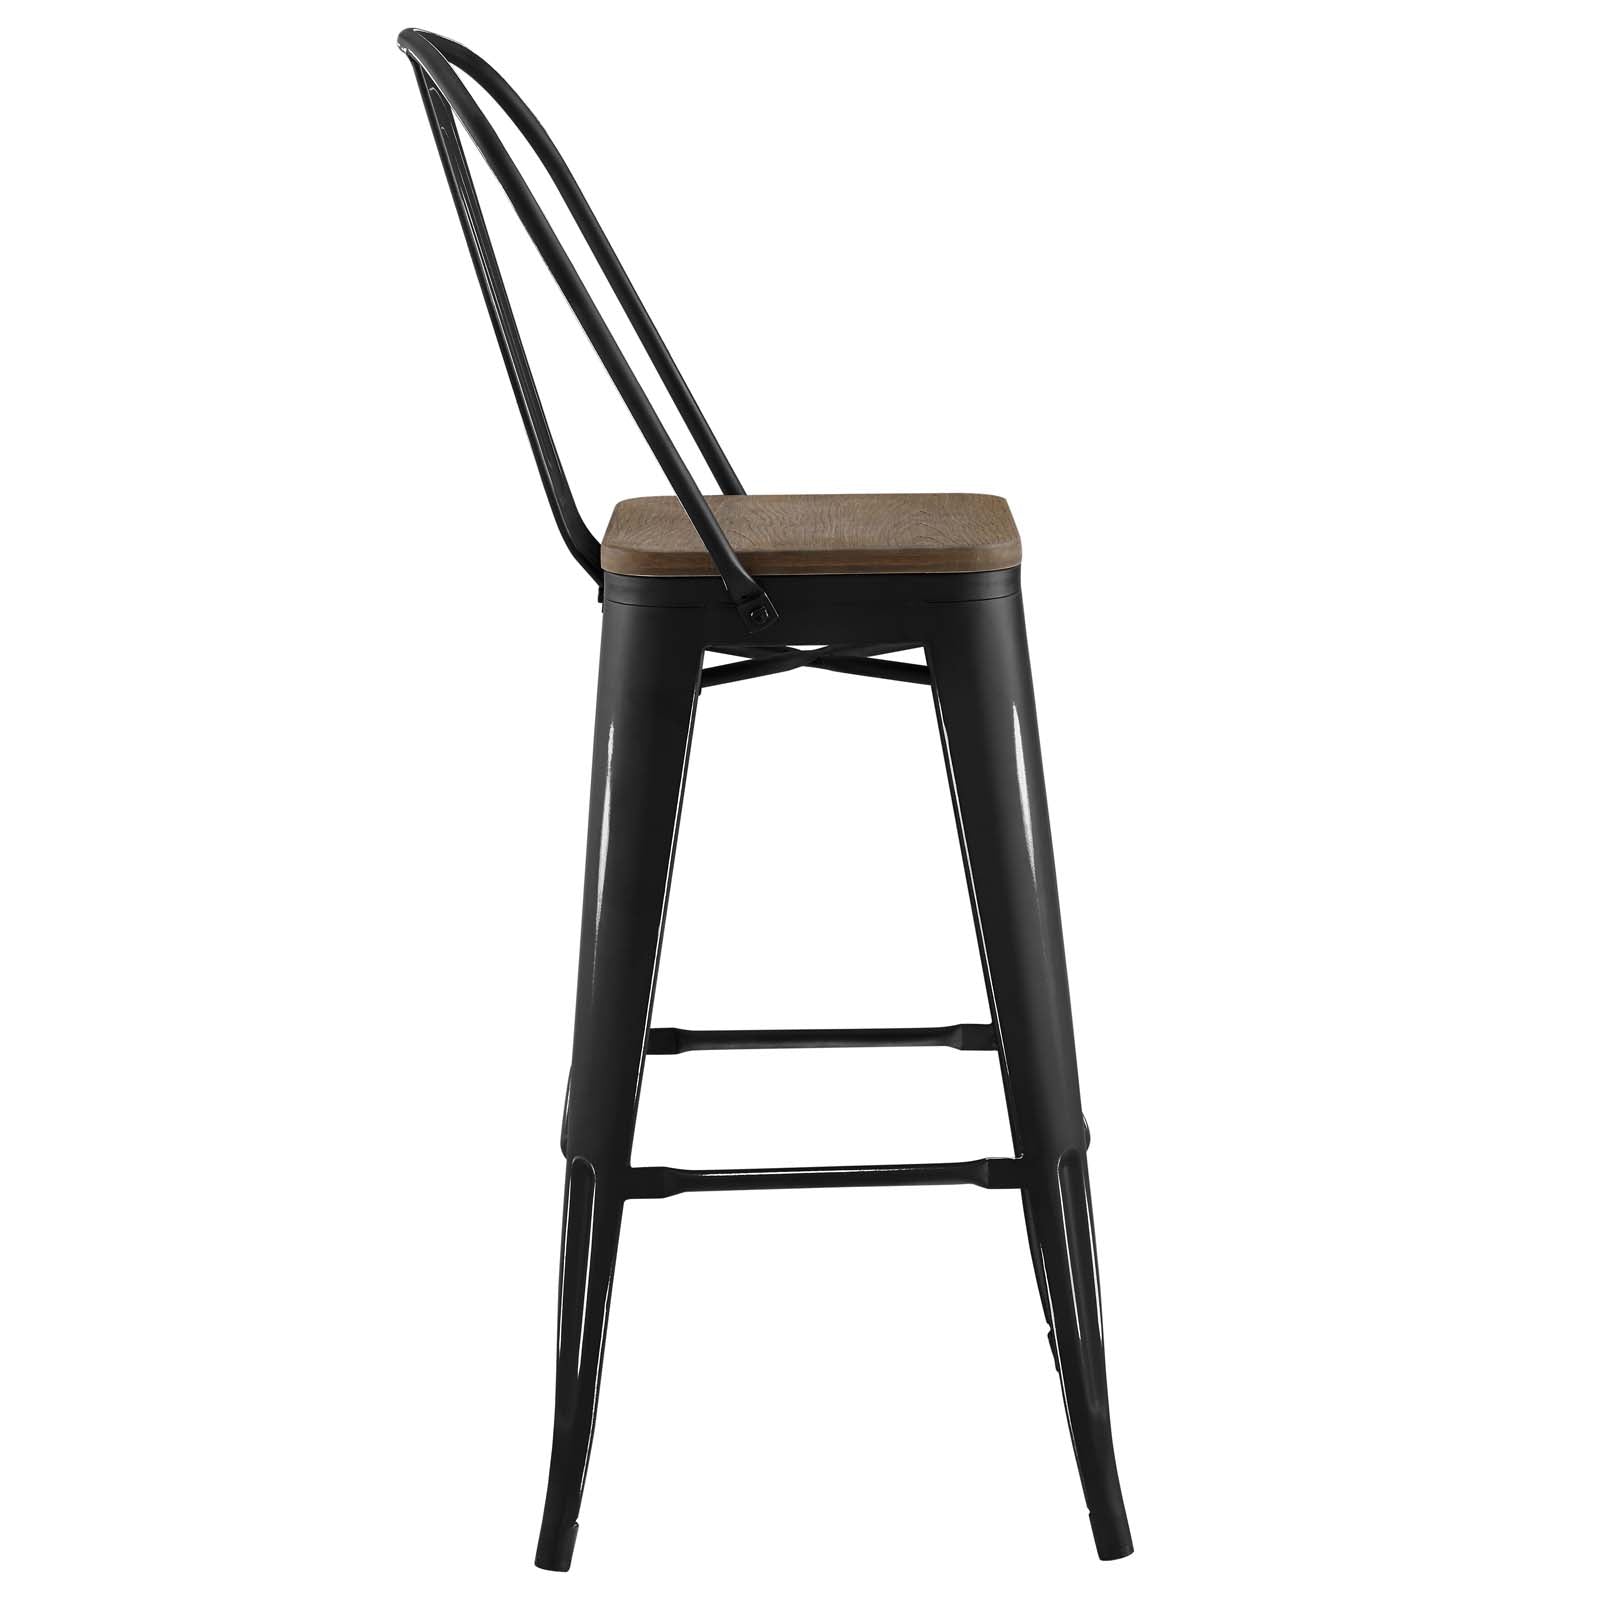 Modway Furniture Modern Promenade Metal Bar Stool - EEI-2816-Minimal & Modern